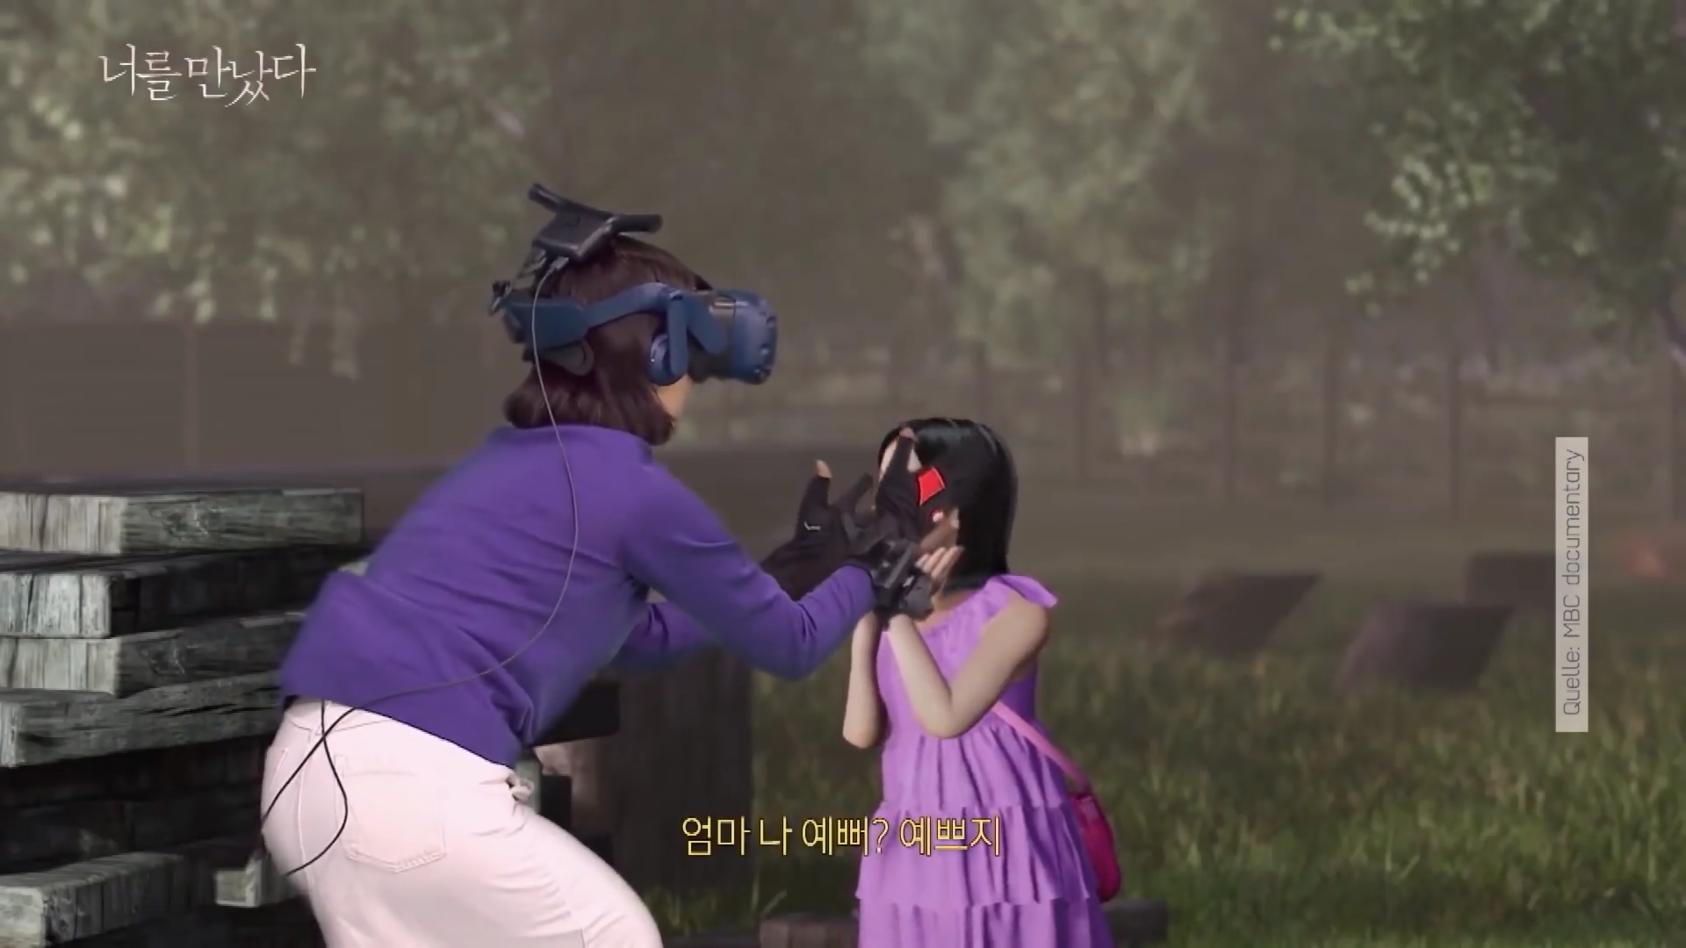 Mutter trifft verstorbene Tochter (7) in virtueller Welt Trauerbewältigung mit der VR-Brille